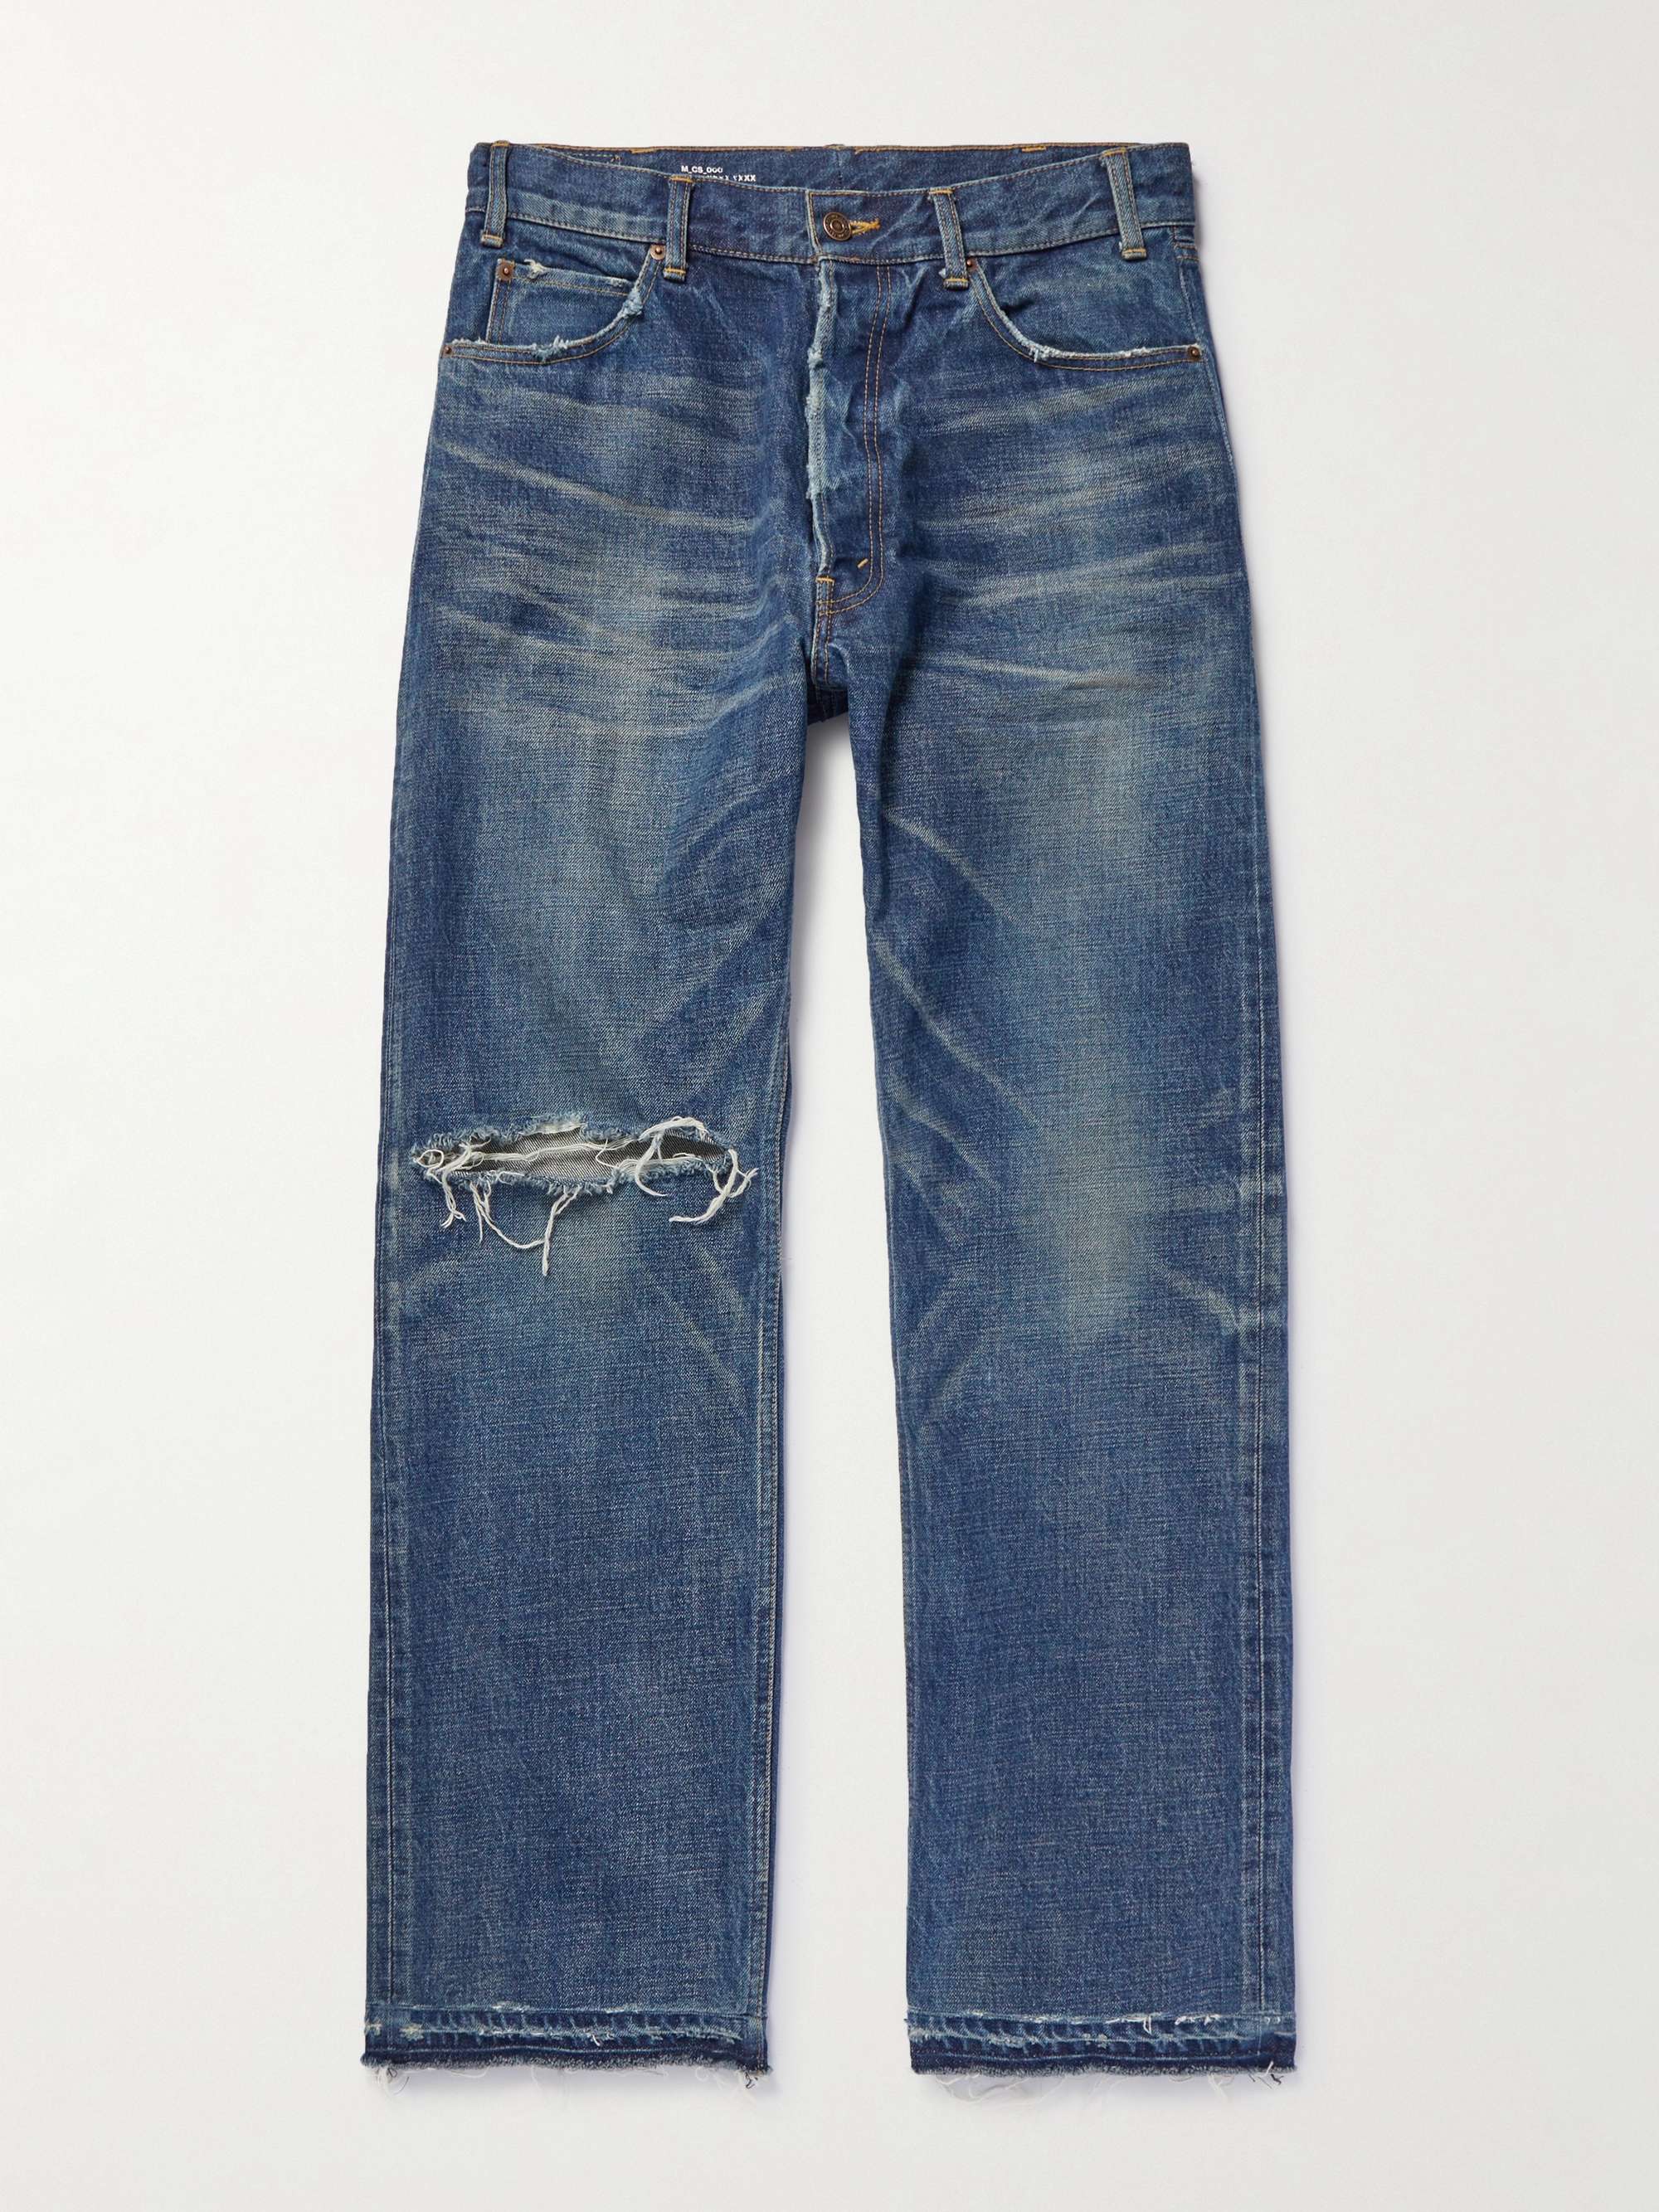 CELINE HOMME Wesley Straight-Leg Distressed Jeans for Men | MR PORTER